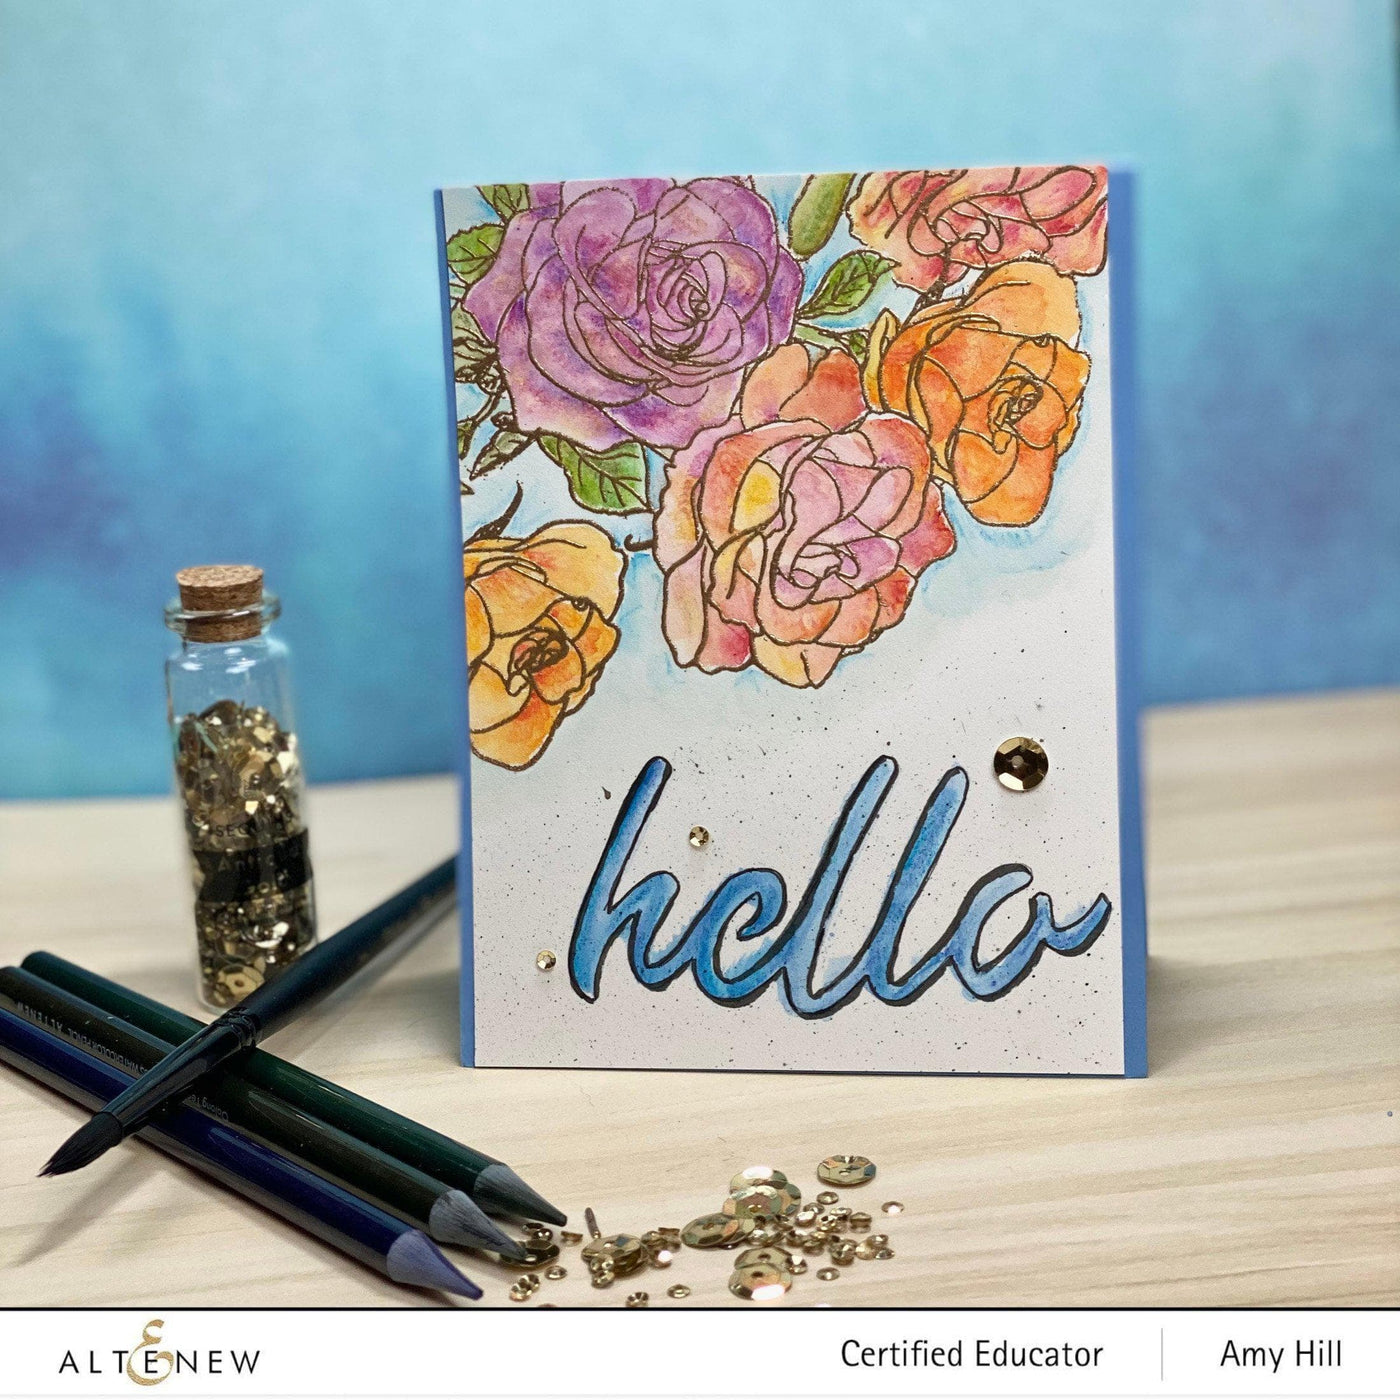 Altenew Stamp & Watercolor Bundle Paint-A-Flower: Rosa Floribunda & Artists' Watercolor 24 Pan Set Bundle